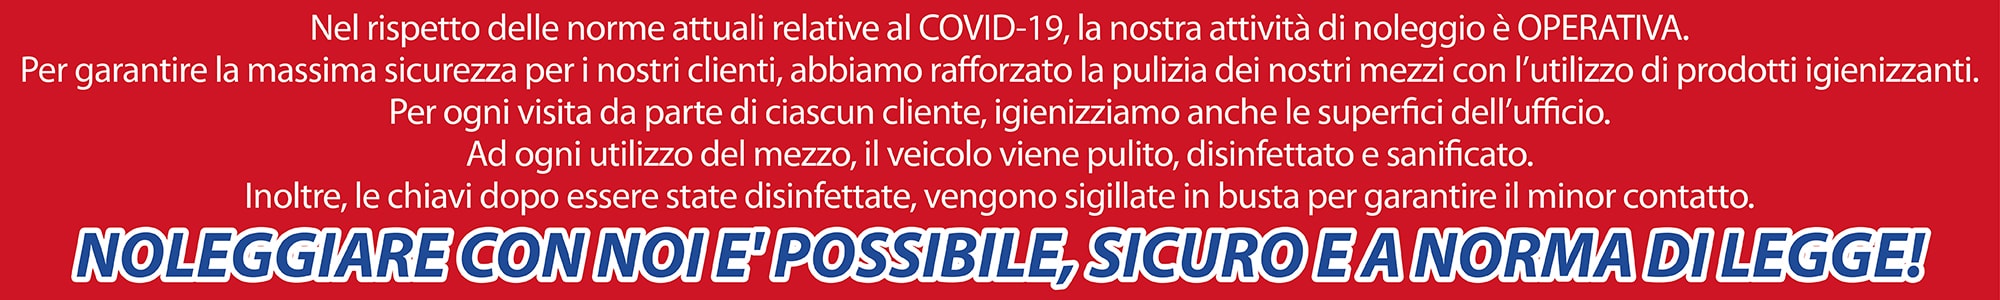 Mariottini Autonoleggio COVID-19